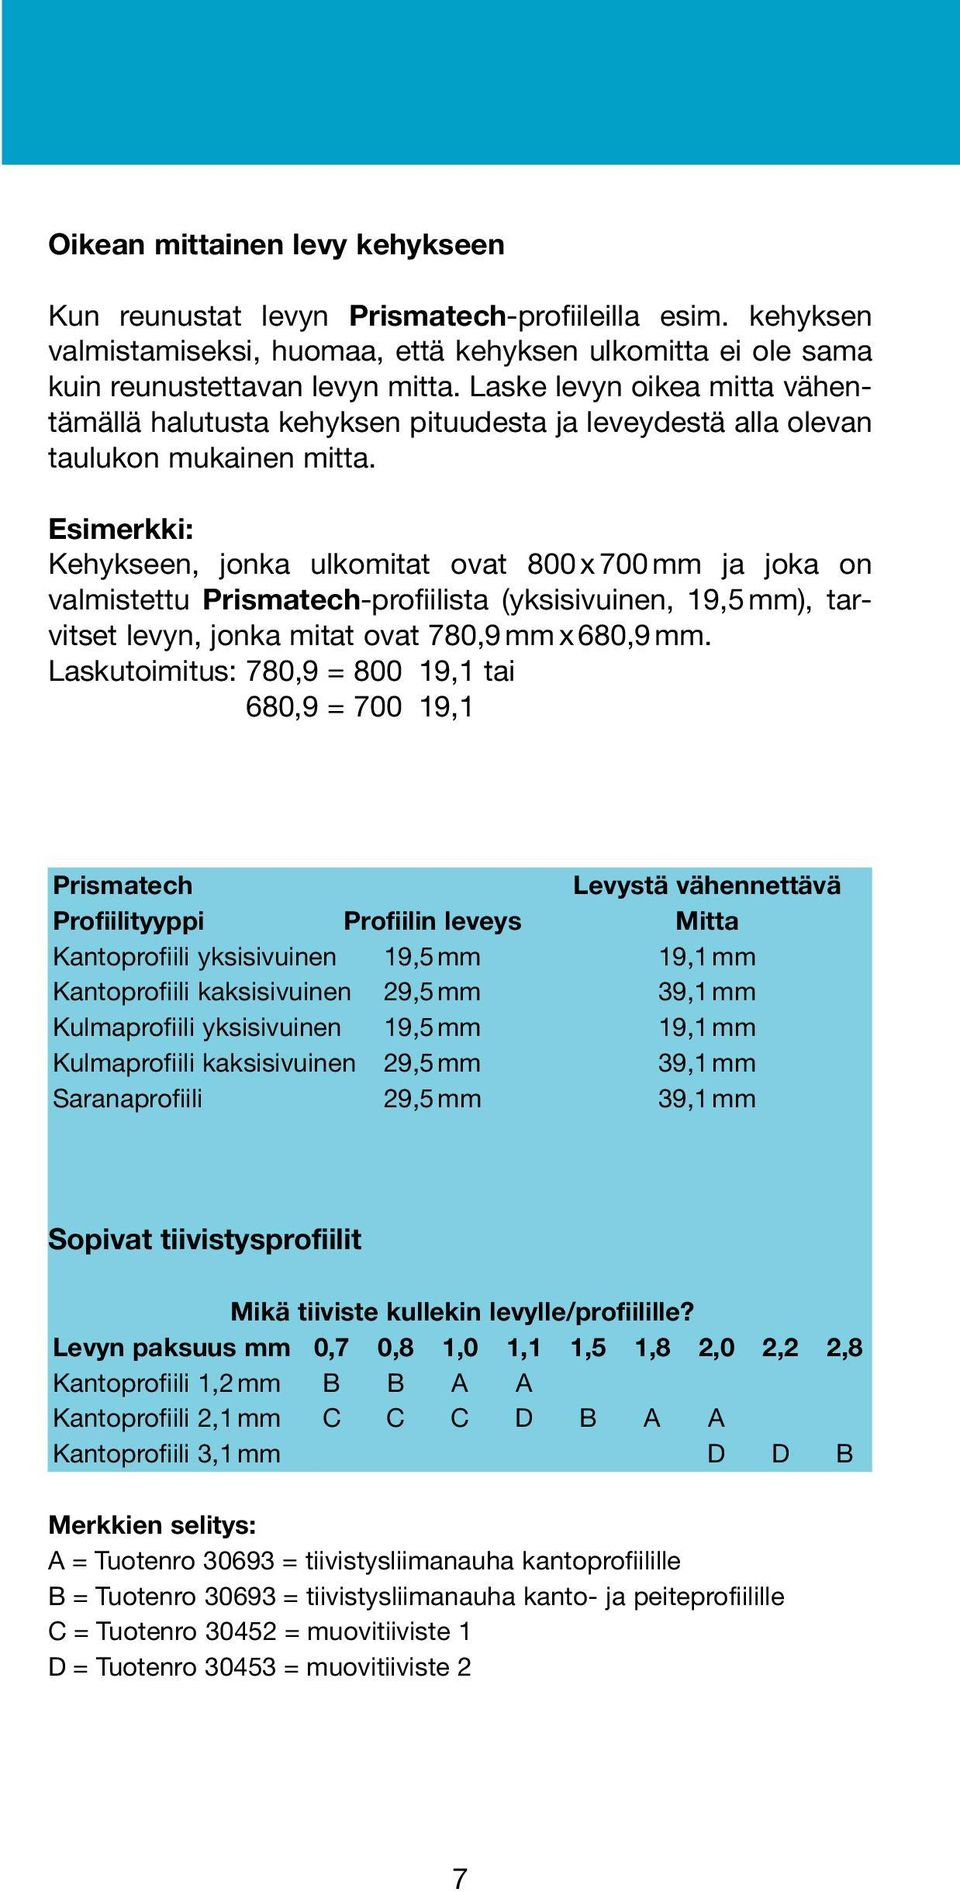 Esimerkki: Kehykseen, jonka ulkomitat ovat 800 x 700 mm ja joka on valmistettu Prismatech-profiilista (yksisivuinen, 19,5 mm), tarvitset levyn, jonka mitat ovat 780,9 mm x 680,9 mm.